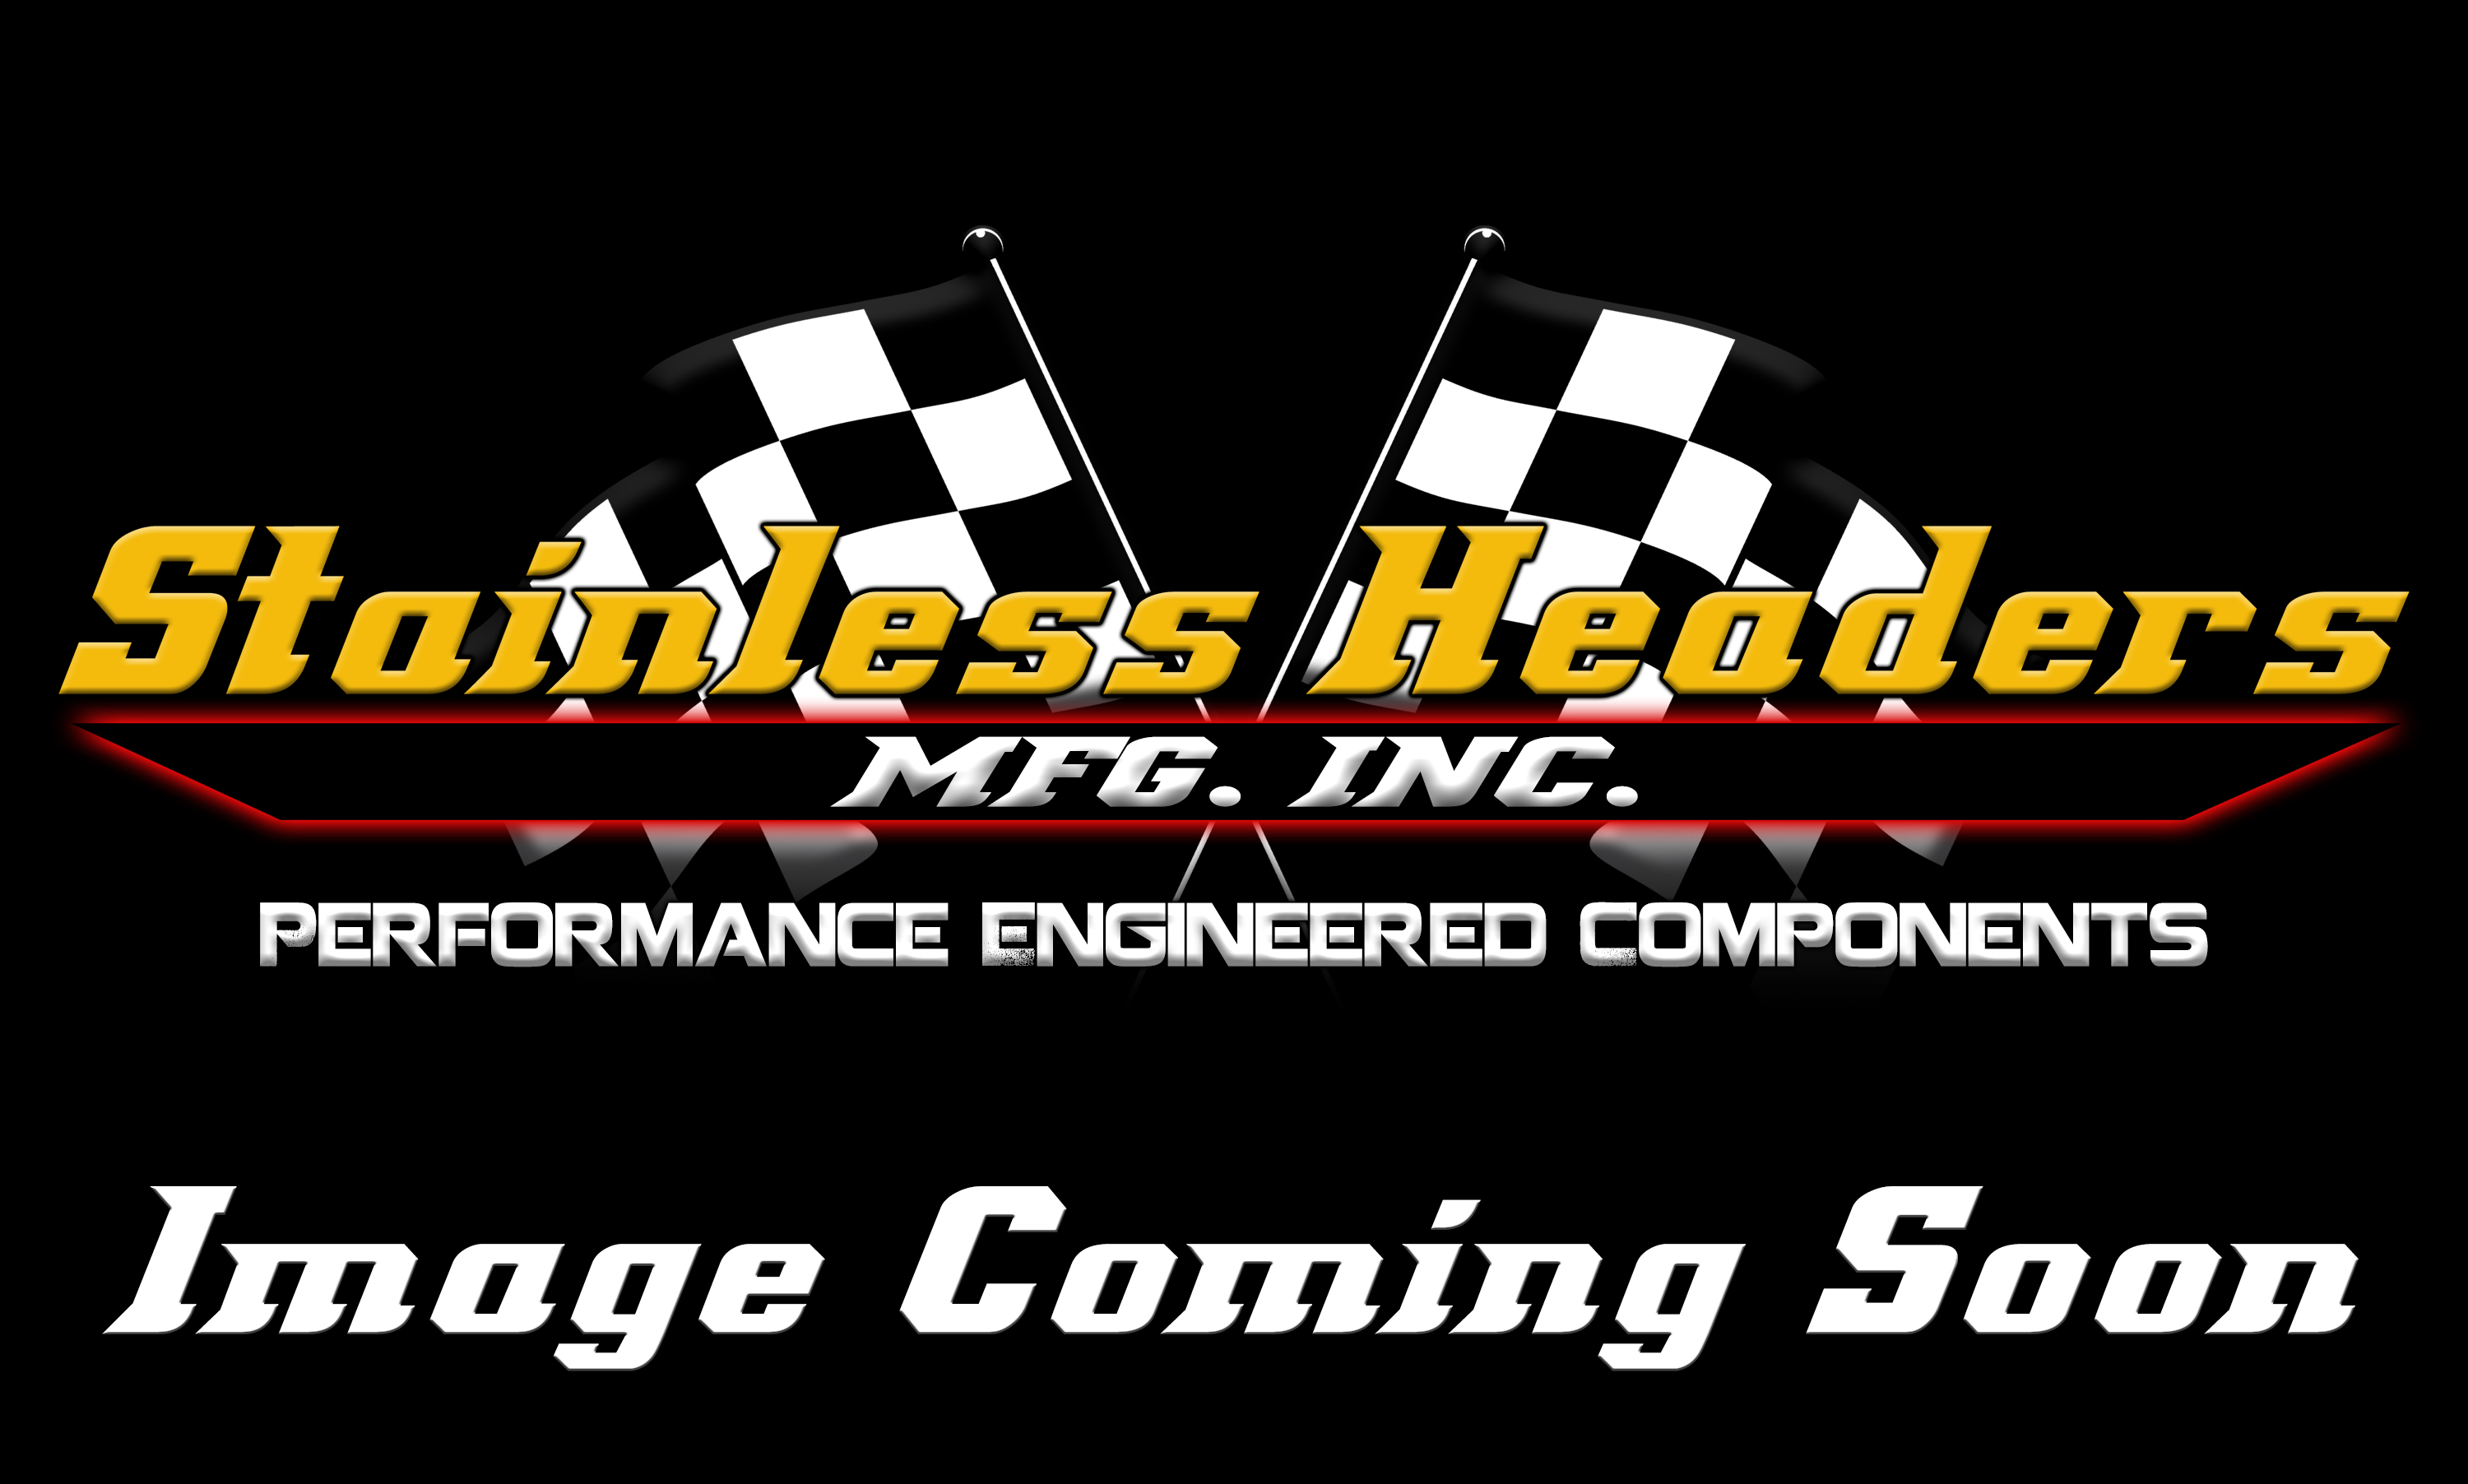 Stainless Headers - Chevrolet LS7/LSX Custom Turbo Header Build Kit